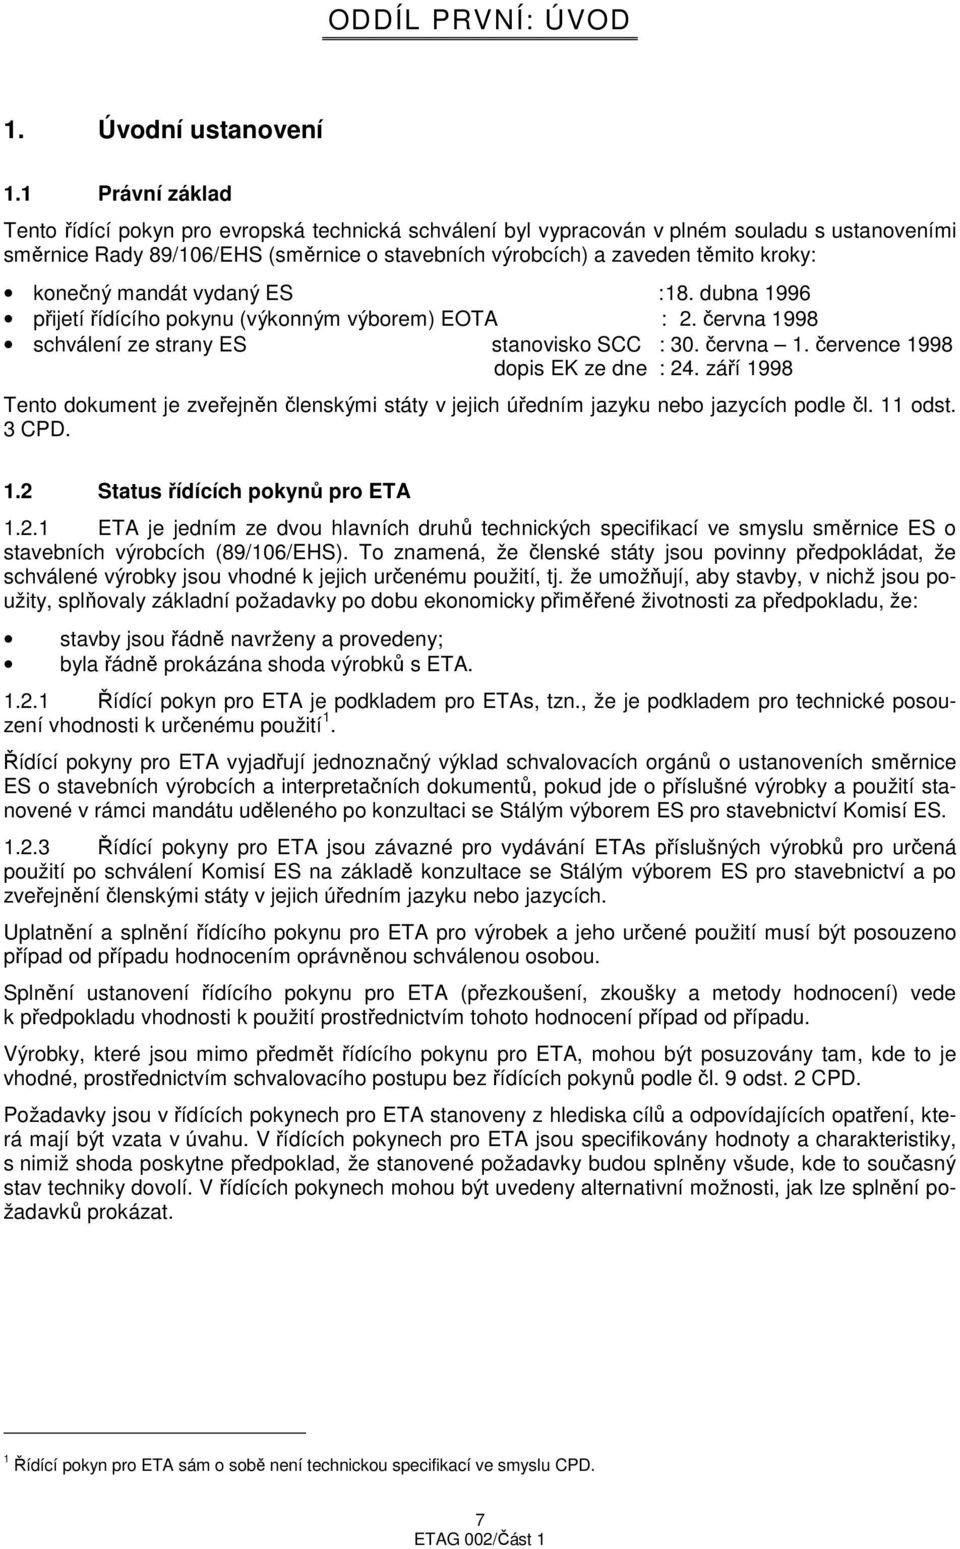 konečný mandát vydaný ES : 18. dubna 1996 přijetí řídícího pokynu (výkonným výborem) EOTA : 2. června 1998 schválení ze strany ES stanovisko SCC : 30. června 1. července 1998 dopis EK ze dne : 24.